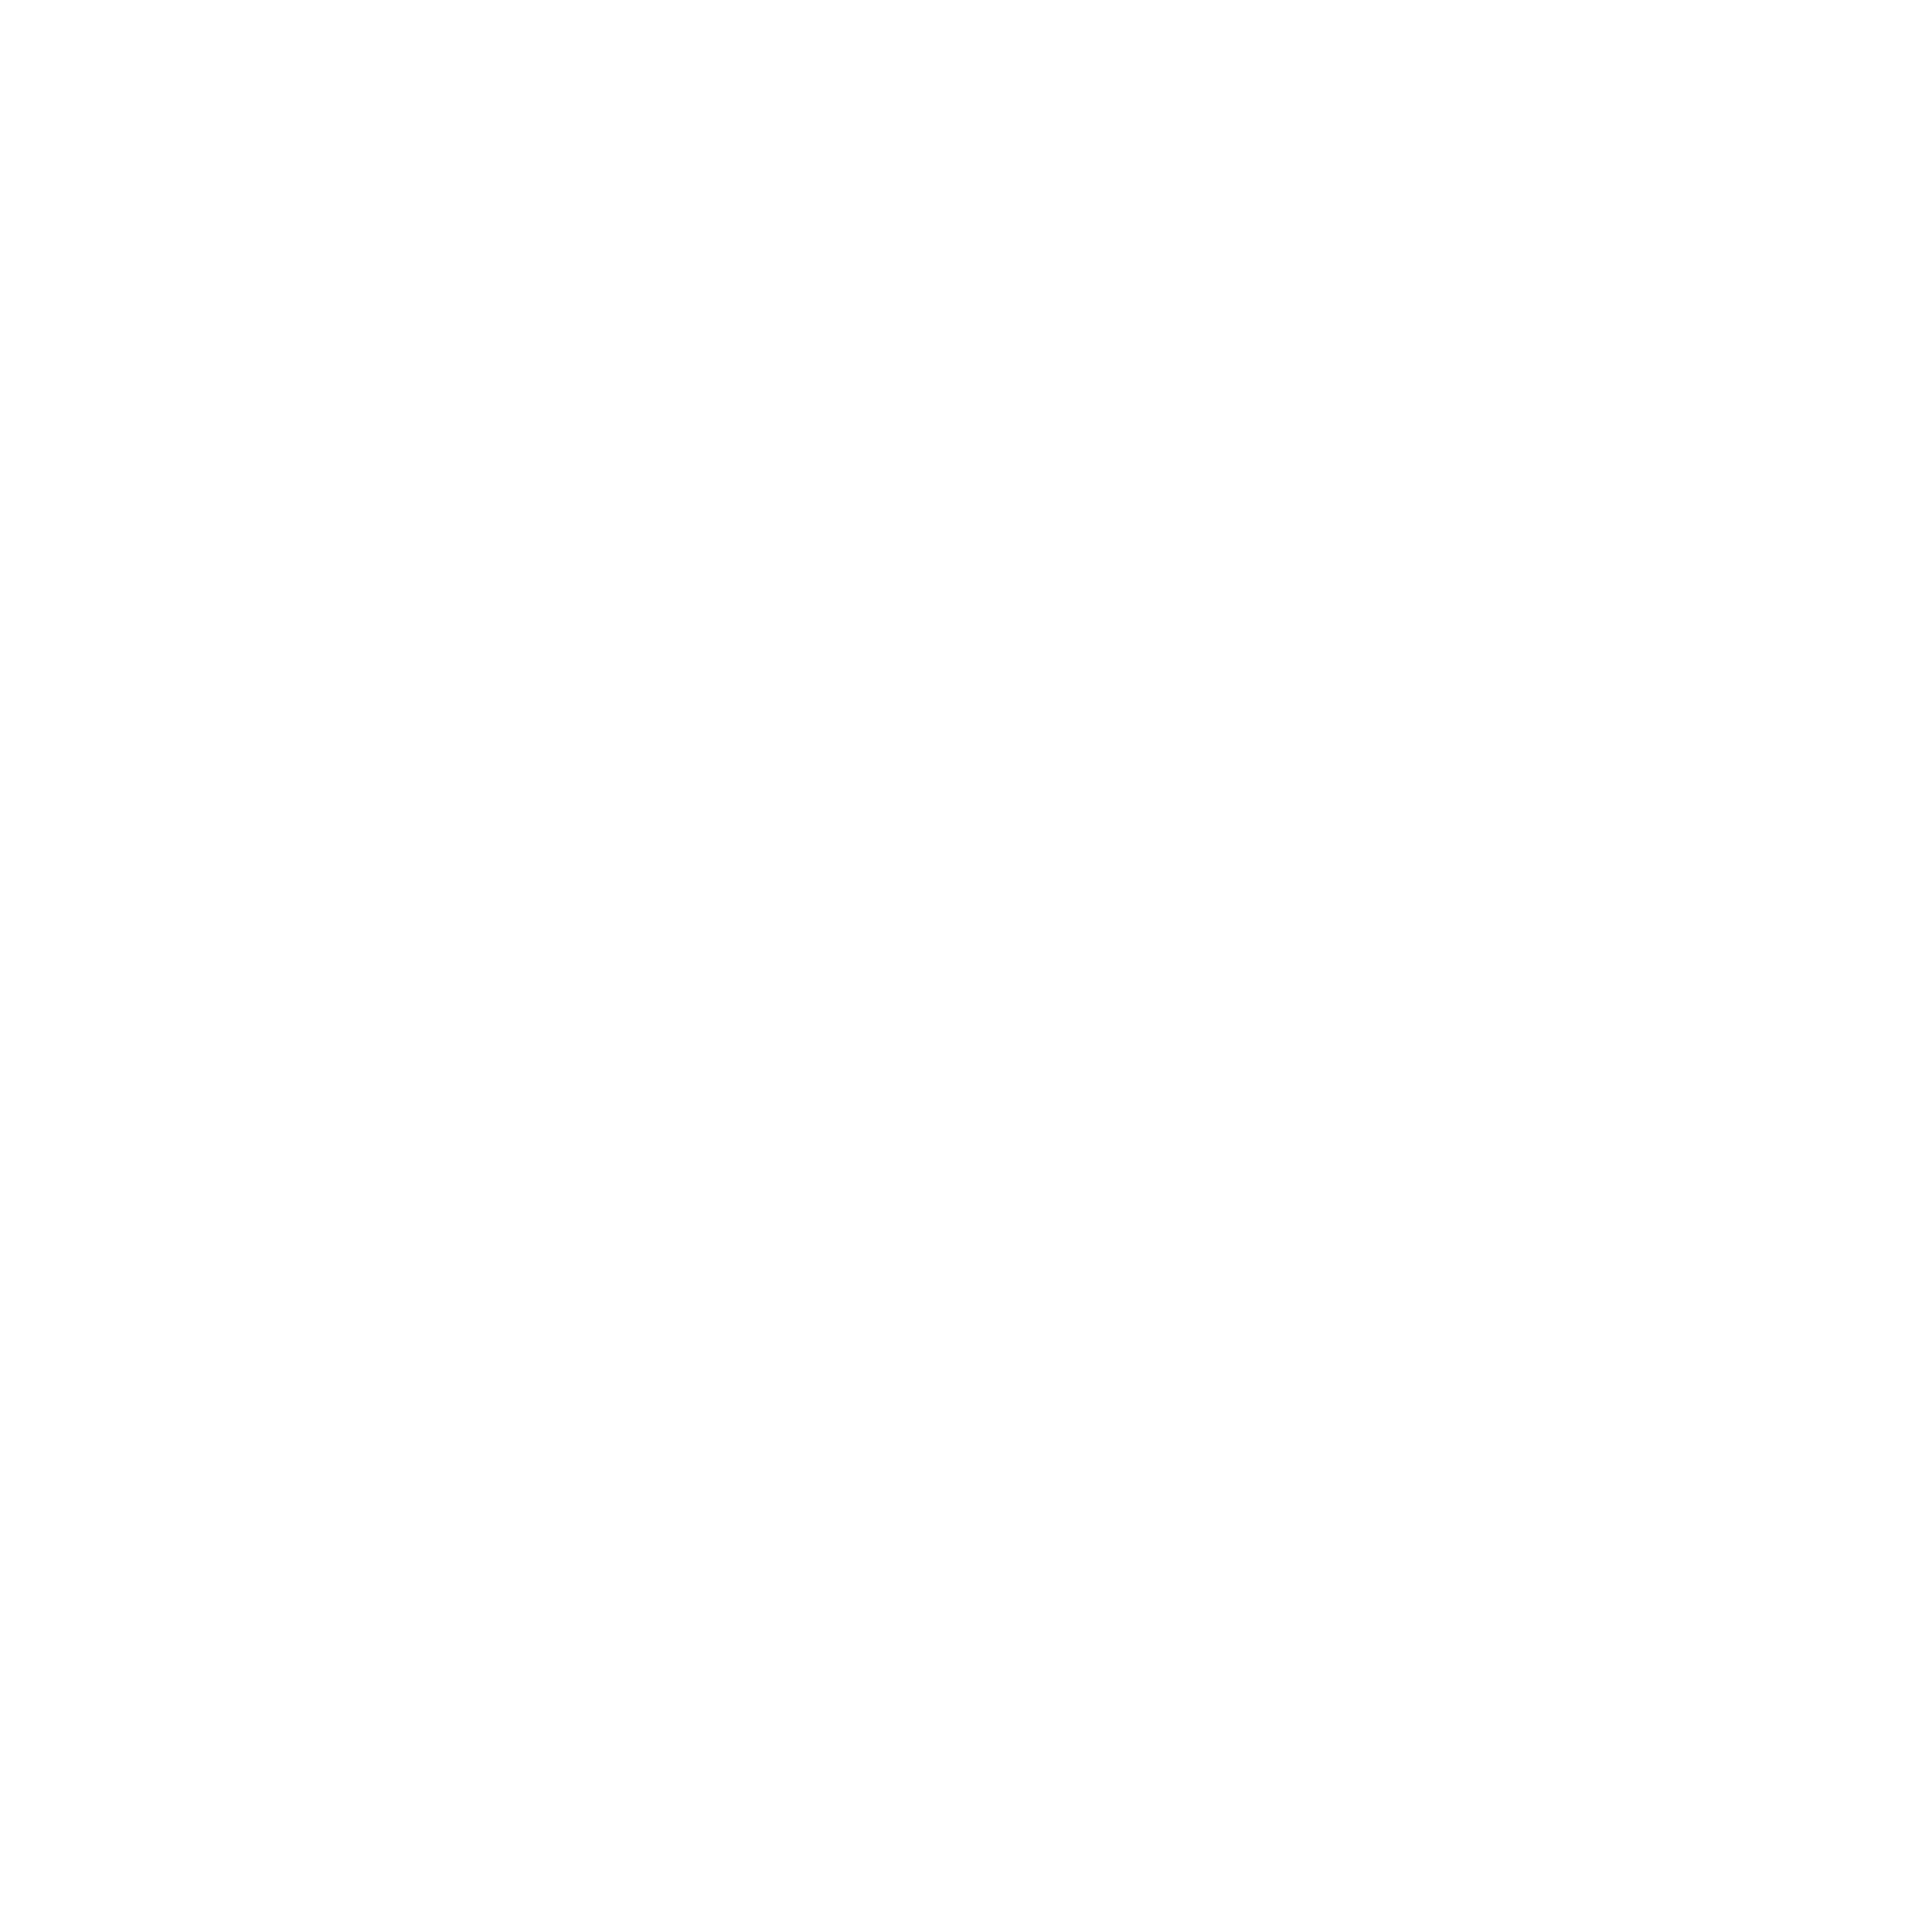 Leap Services